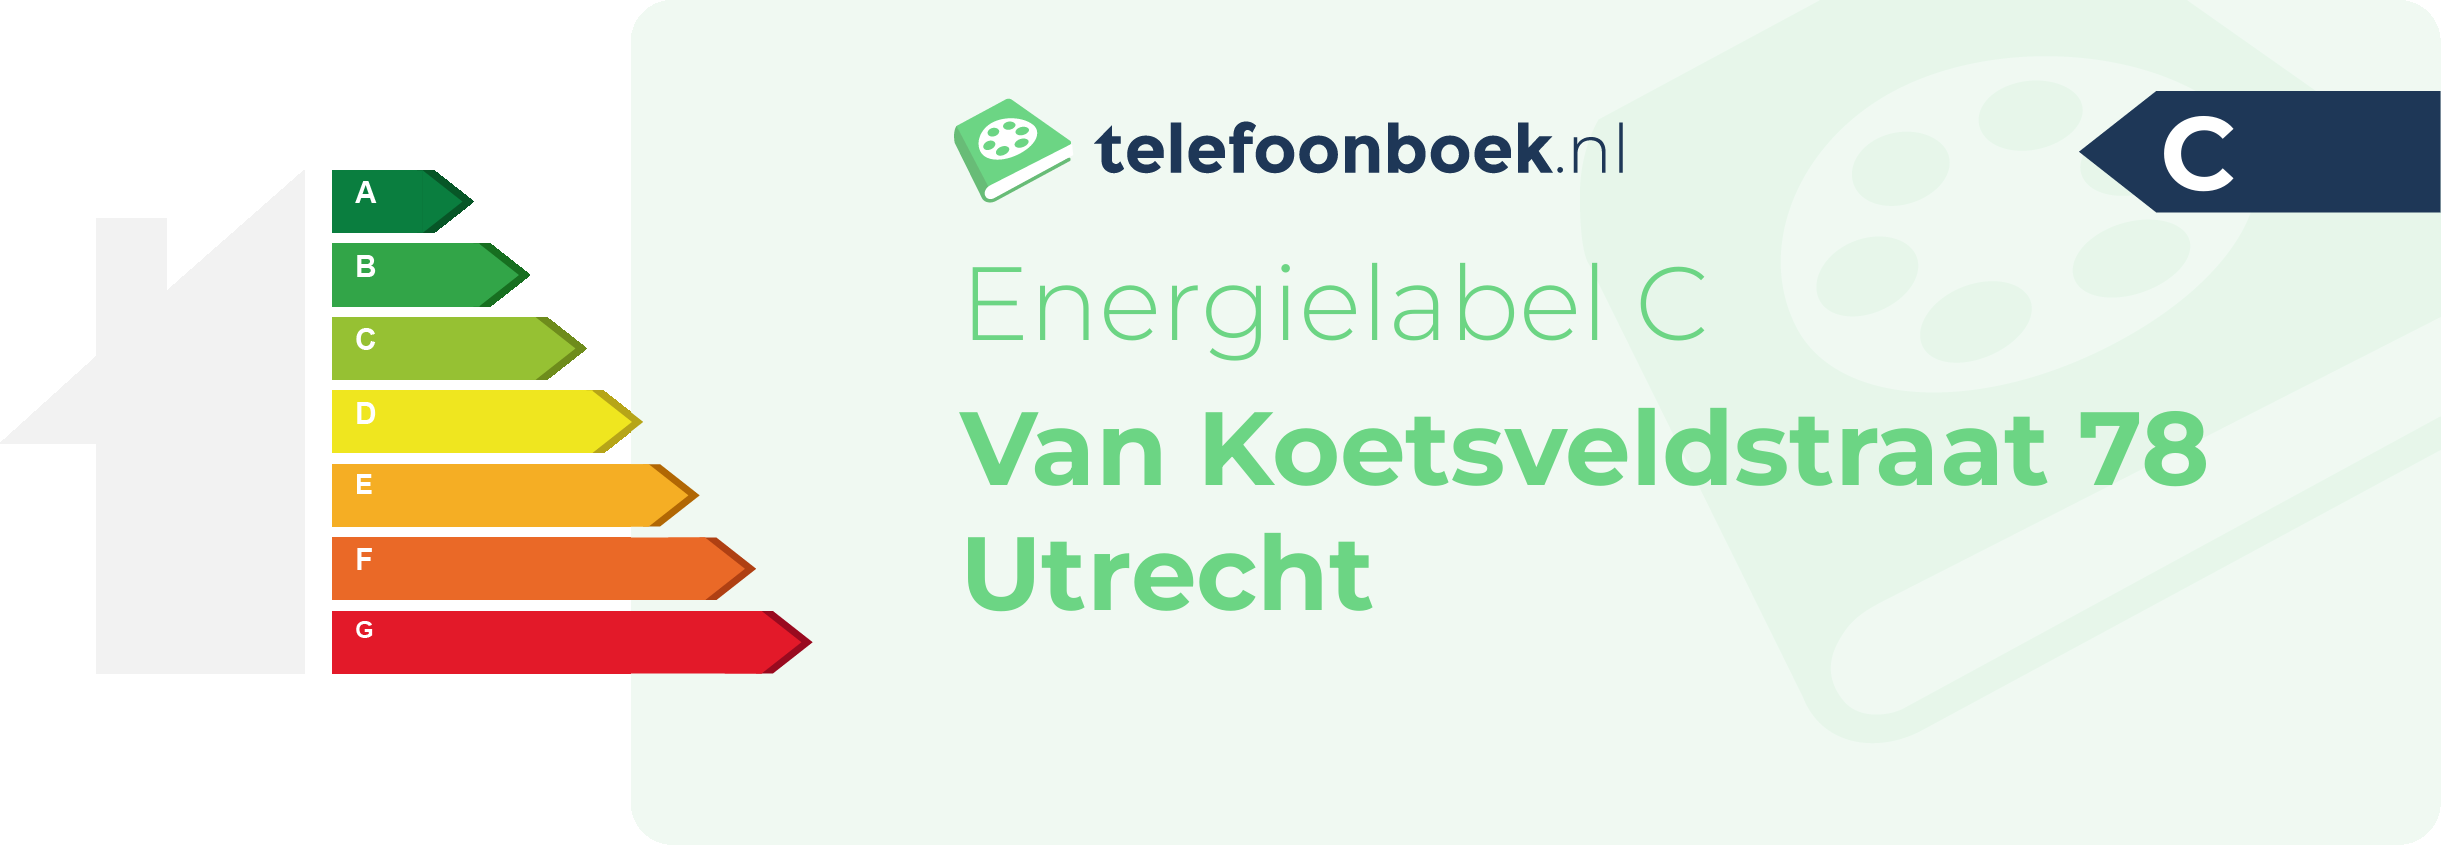 Energielabel Van Koetsveldstraat 78 Utrecht